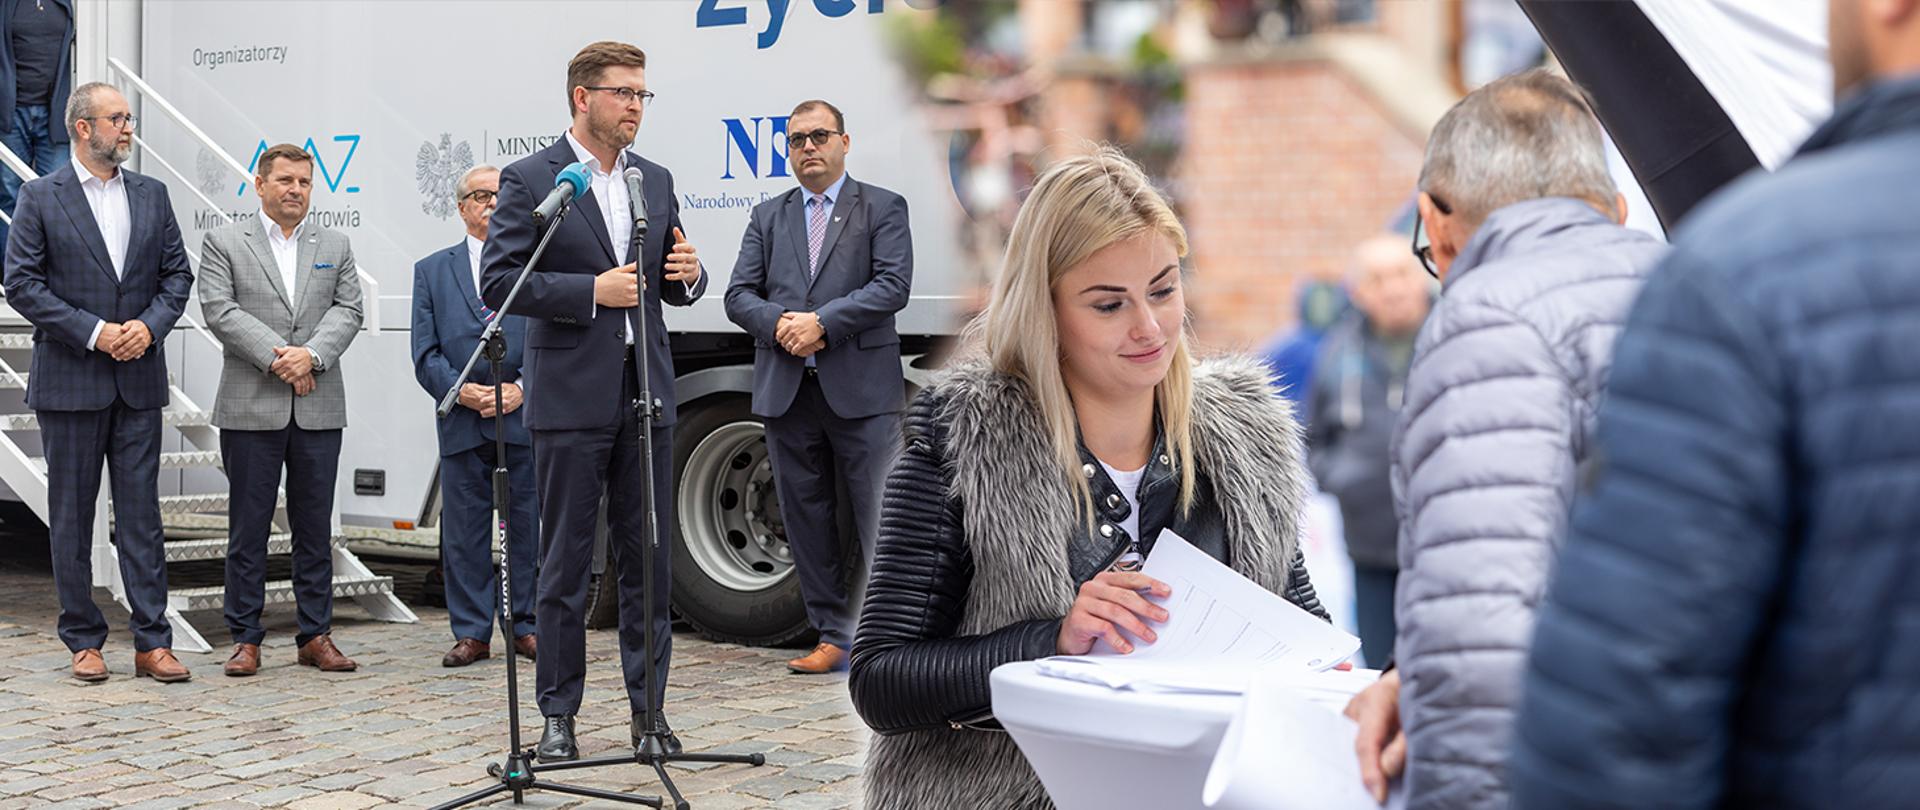 Kolaż dwóch zdjęć. Po lewej stronie wiceminister Andrzej Śliwka stoi za mikrofonem. Z tyłu stoi czterech mężczyzn na tle autobusu z logotypami. Po prawej stronie stoi kobieta, która trzyma w ręku dokumenty oraz dwóch mężczyzn. 